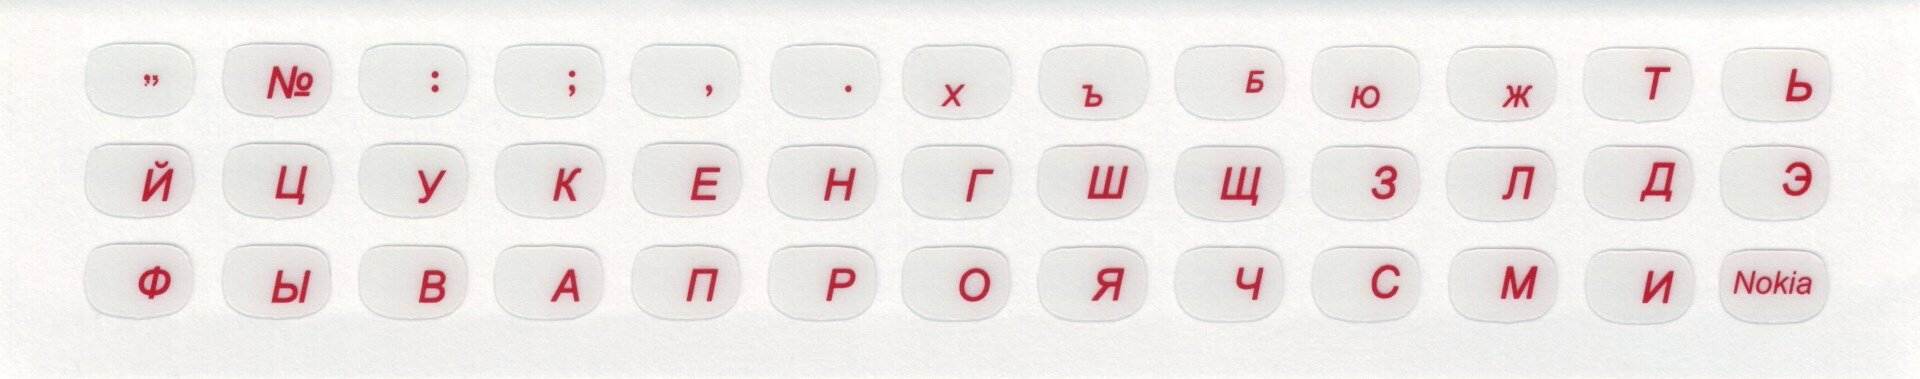 Наклейки на клавиатуру нестираемые, матовые, рус, прозрачные, 9х6 мм, красные